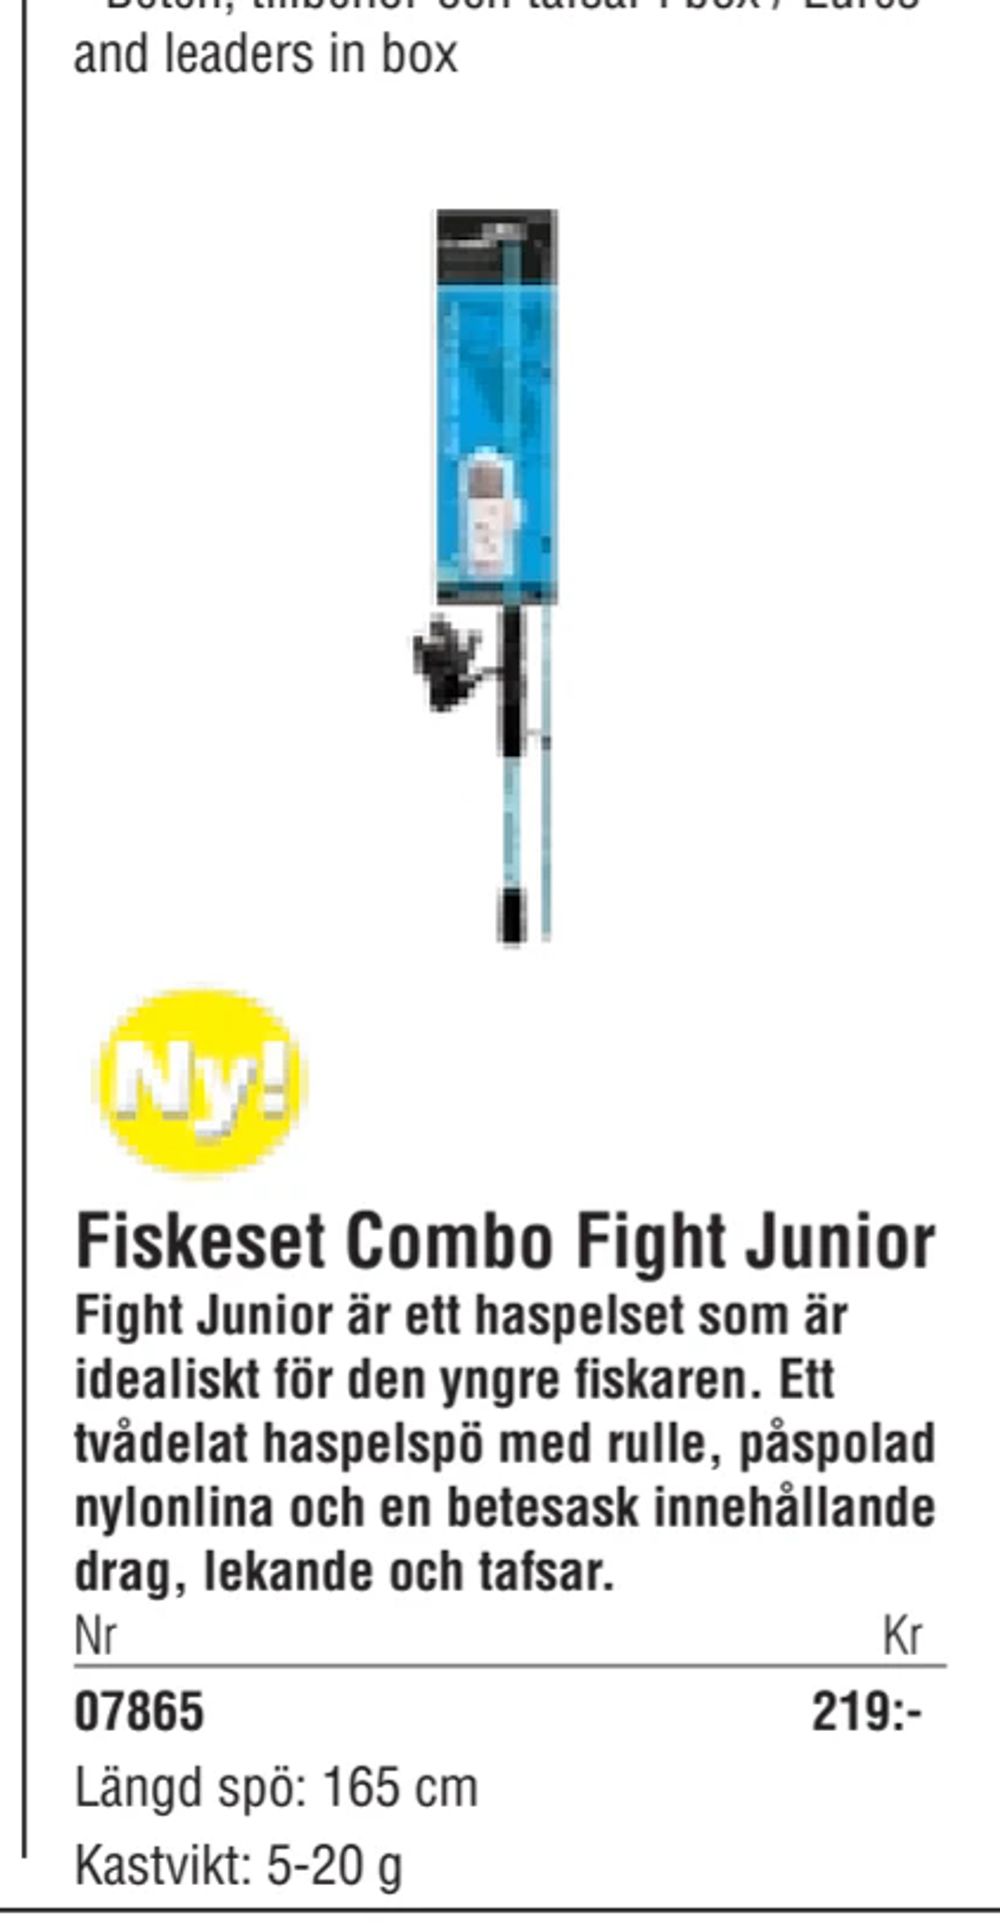 Erbjudanden på Fiskeset Combo Fight Junior från Erlandsons Brygga för 219 kr